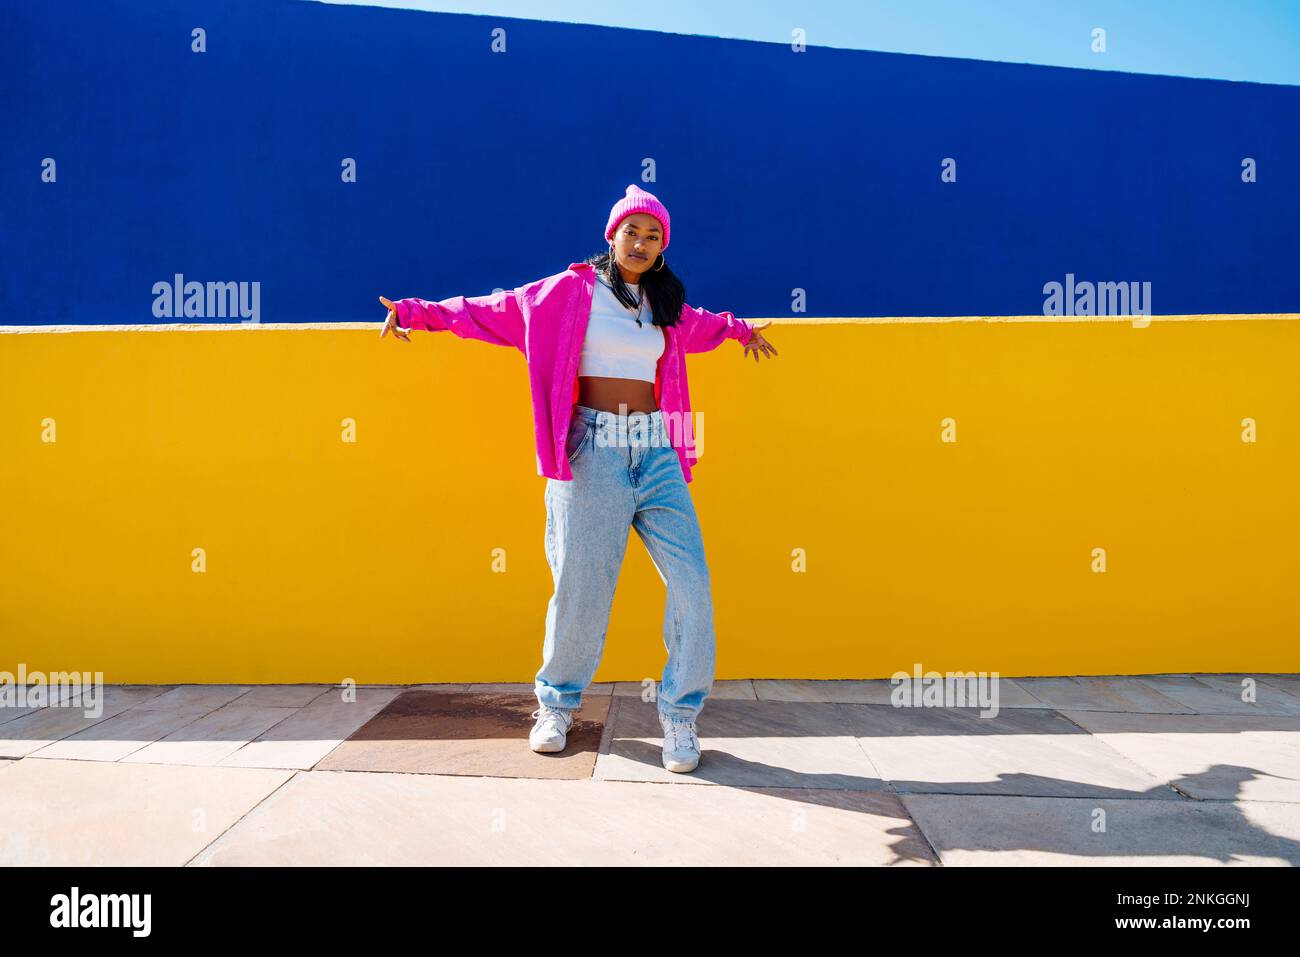 Junge Frau mit cooler Einstellung, die vor einer zweifarbigen Wand tanzt Stockfoto